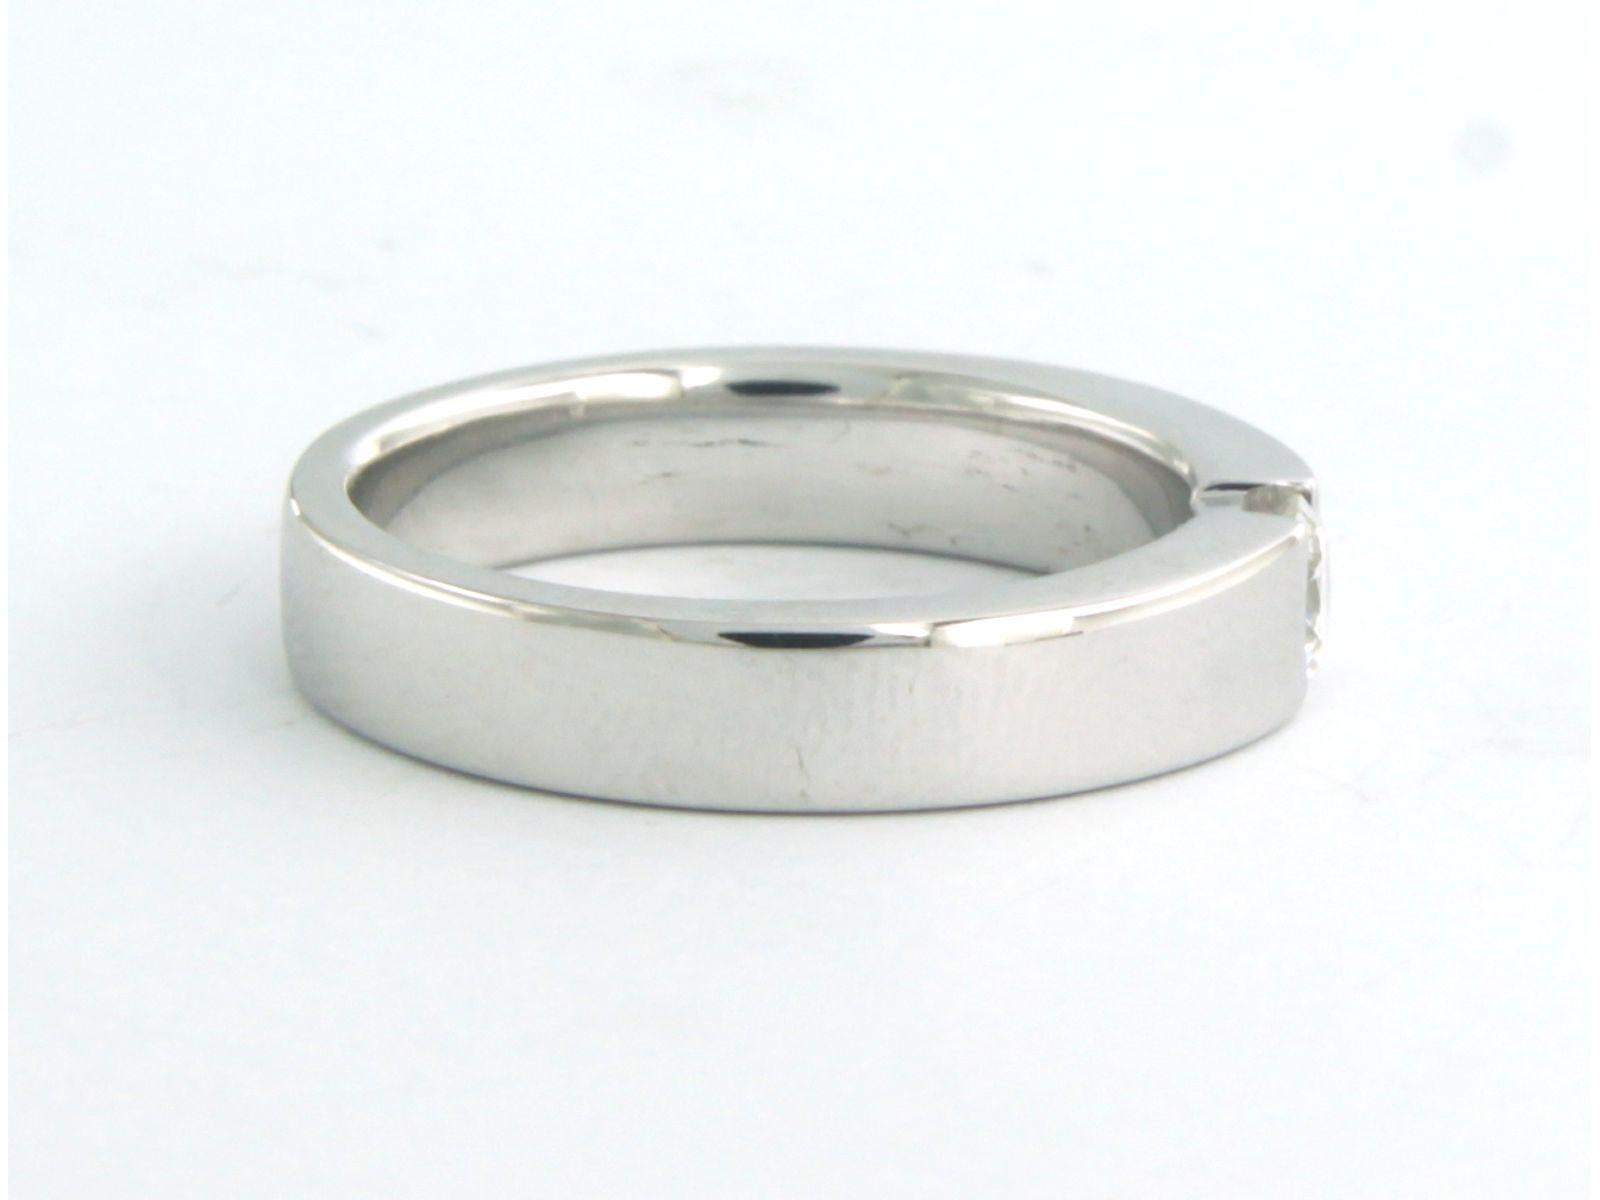 Ring aus 18 Karat Weißgold, besetzt mit Diamanten im Brillantschliff. 0.25ct - F/G - VS/SI - Ringgröße U.S. 6.0 - EU. 16.5(52)

detaillierte Beschreibung:

die Oberseite des Rings ist 4.0 mm breit

Gewicht 6,7 Gramm

Ringgröße U.S. 6.0 - EU.